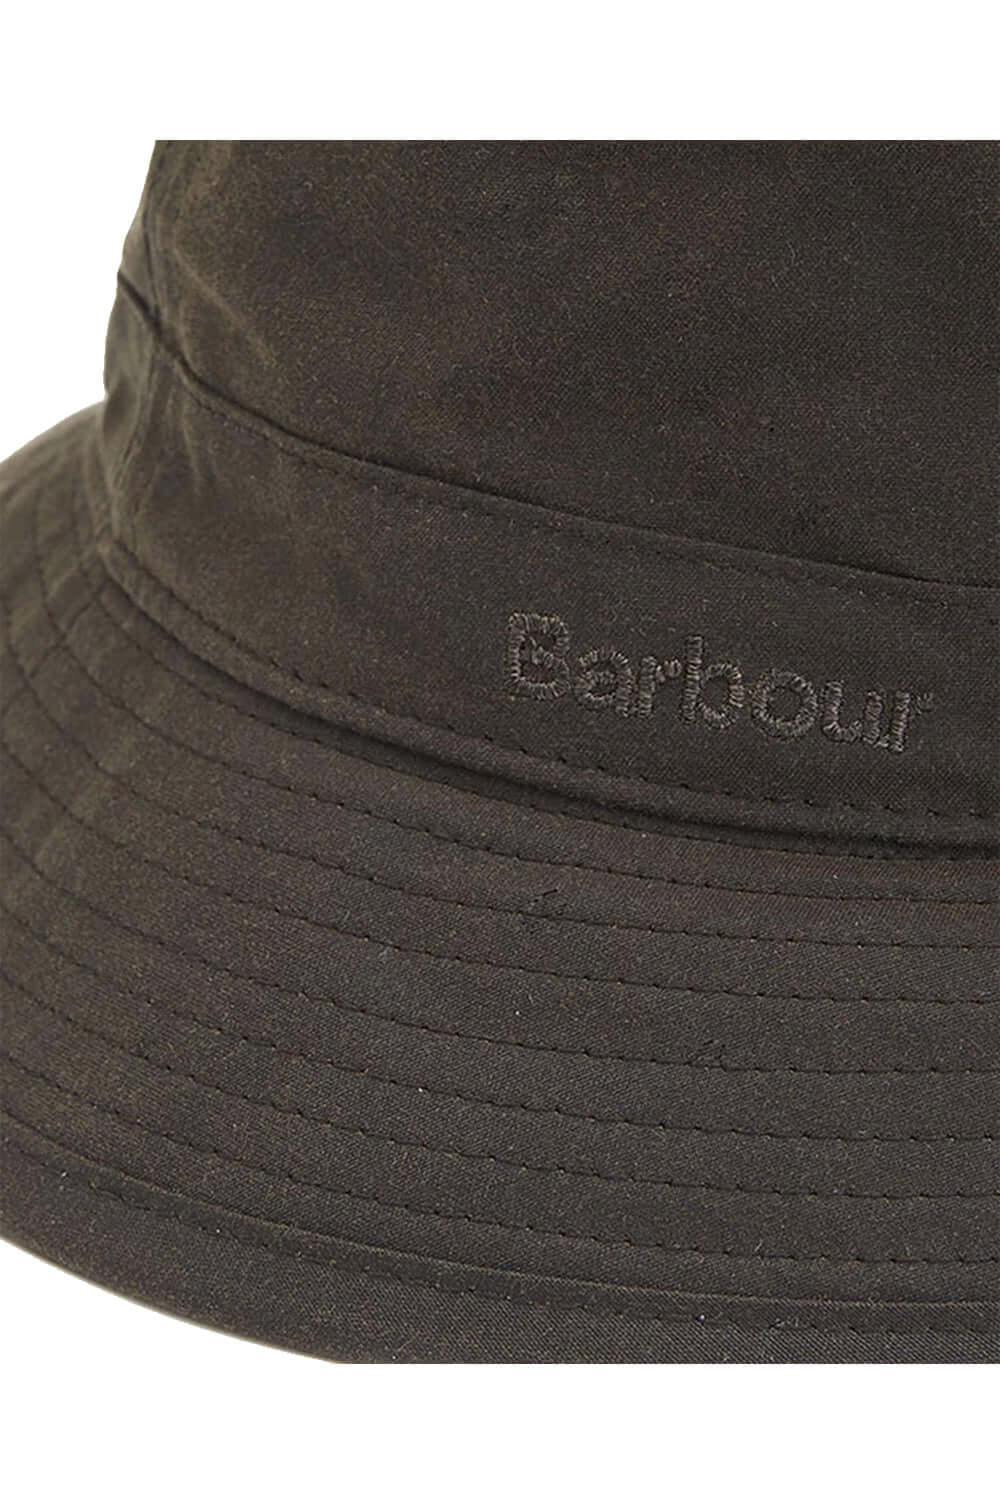 BARBOUR Cappellino sportivo cerato Cappello BARBOUR   